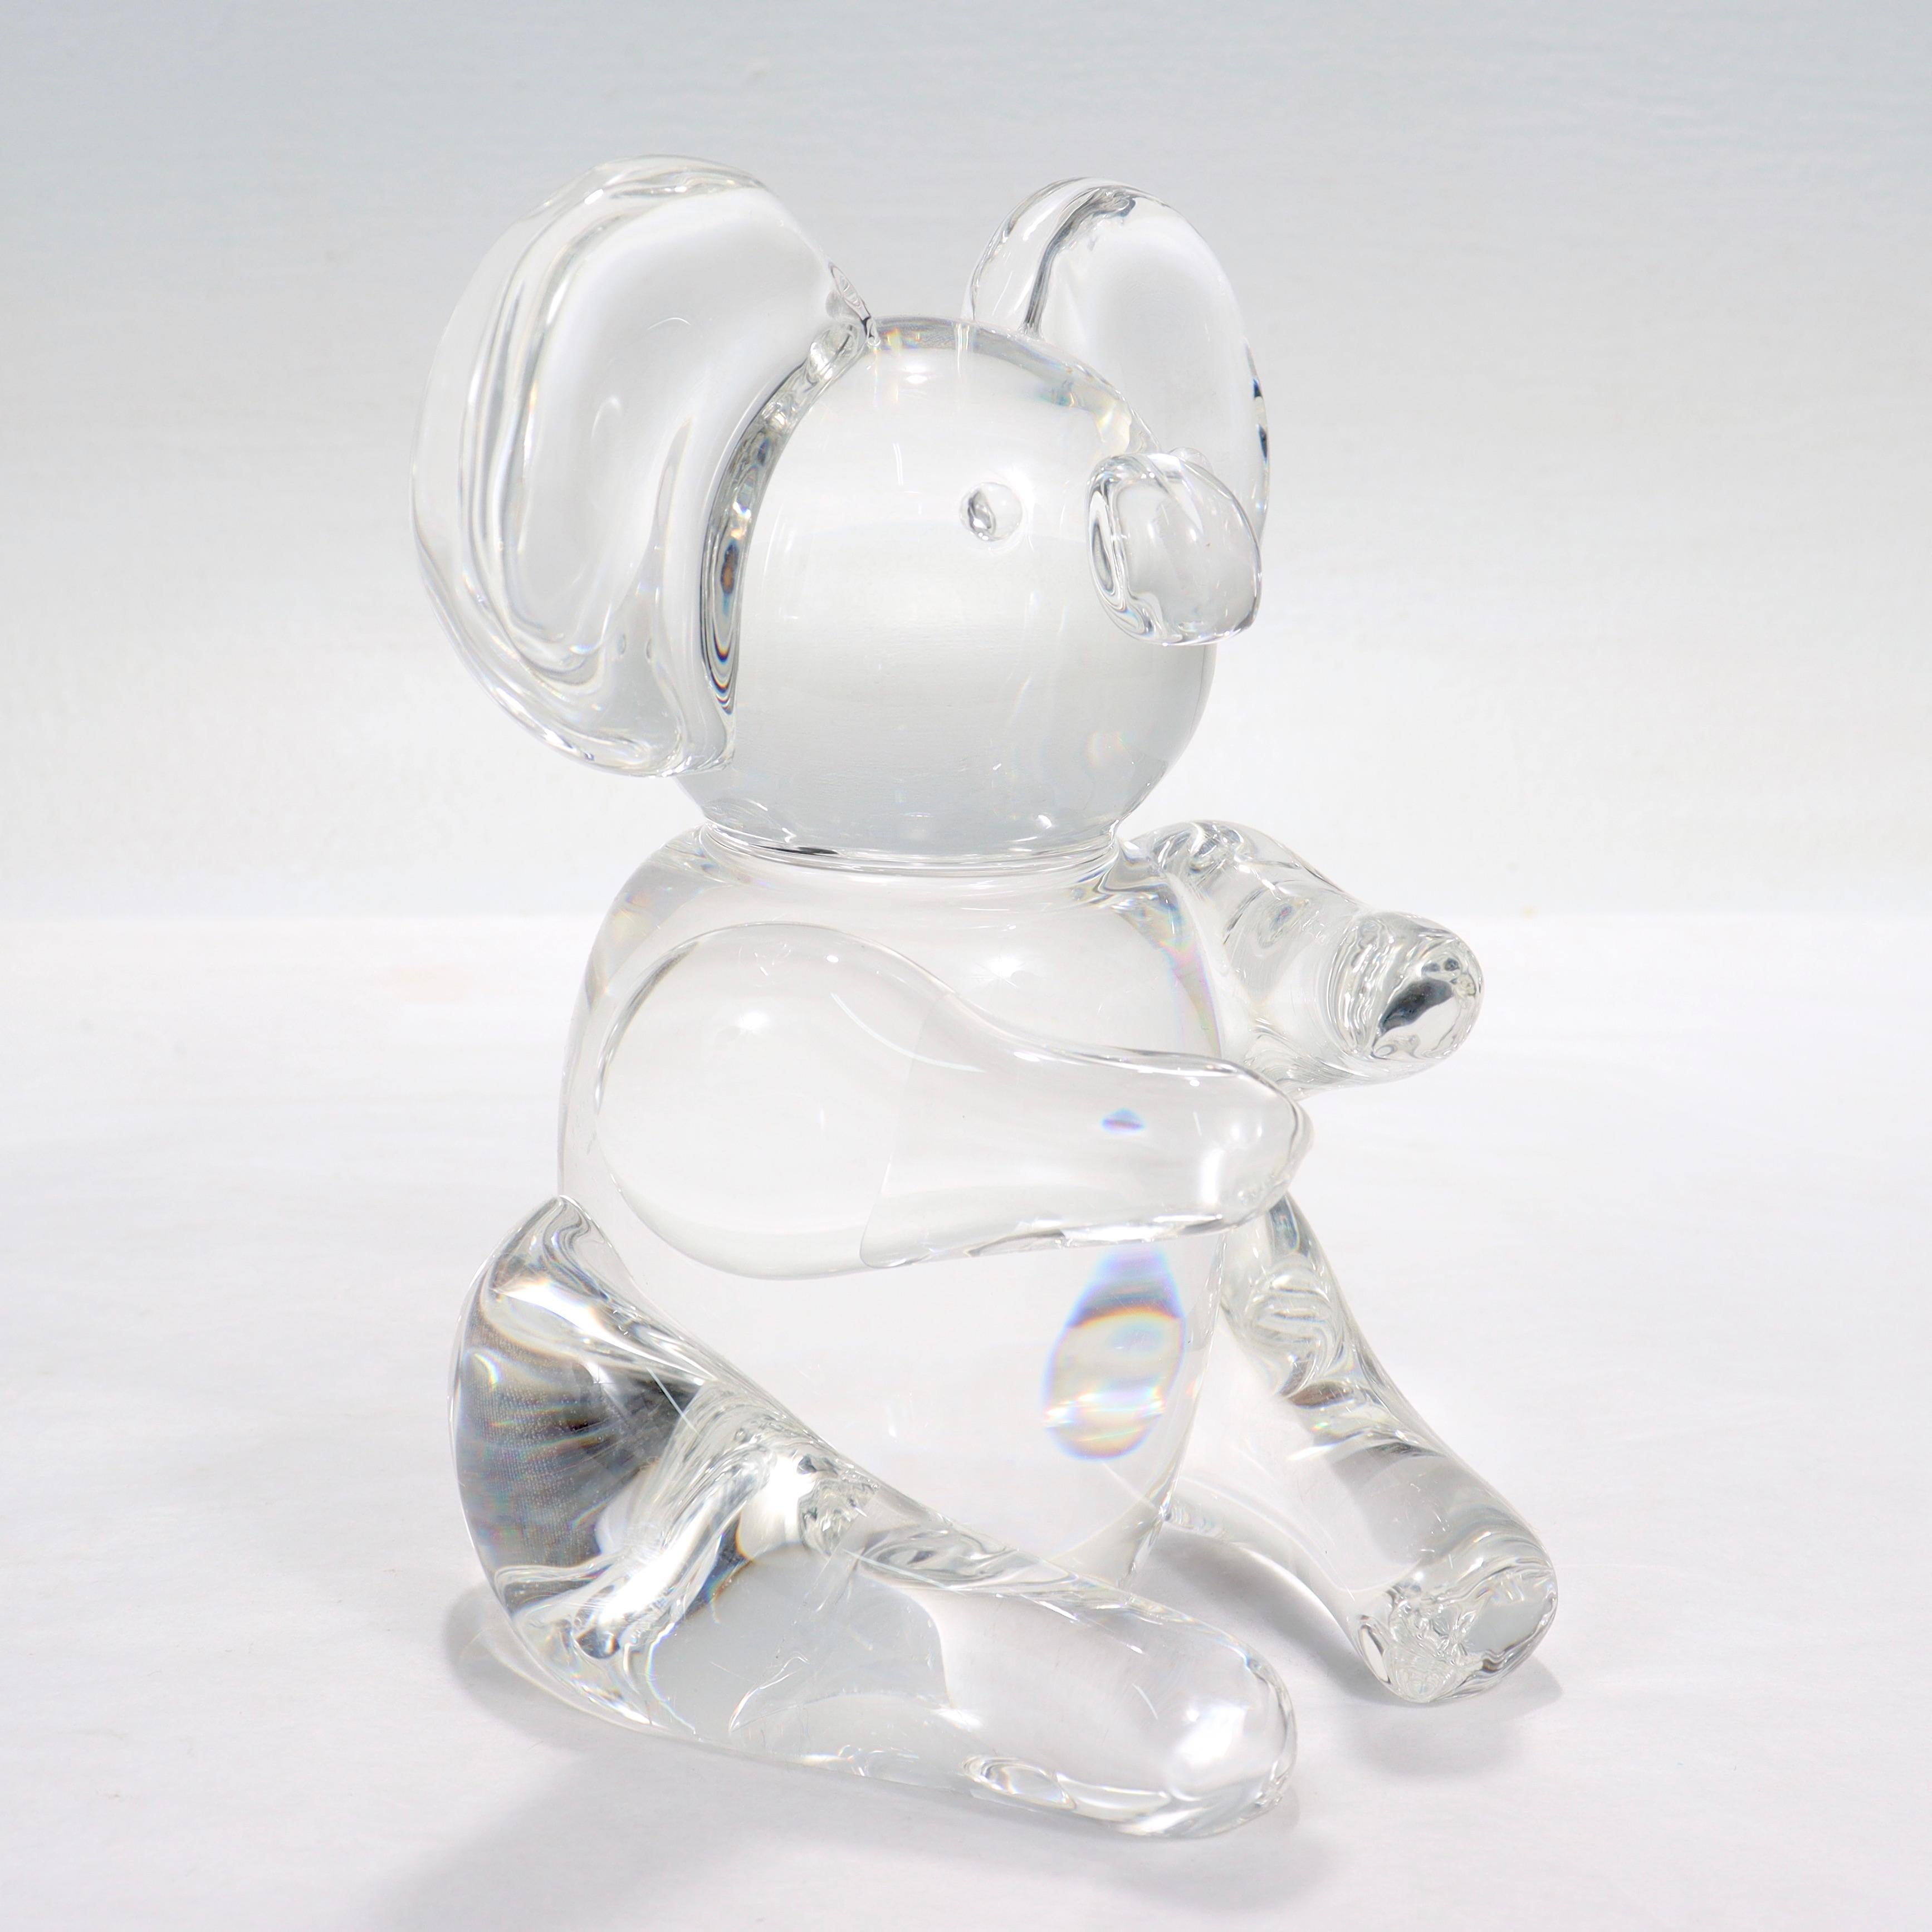 Steuben Koala Bear Figurine or Sculpture Model No. 8268 by Lloyd Atkins 1971 For Sale 3